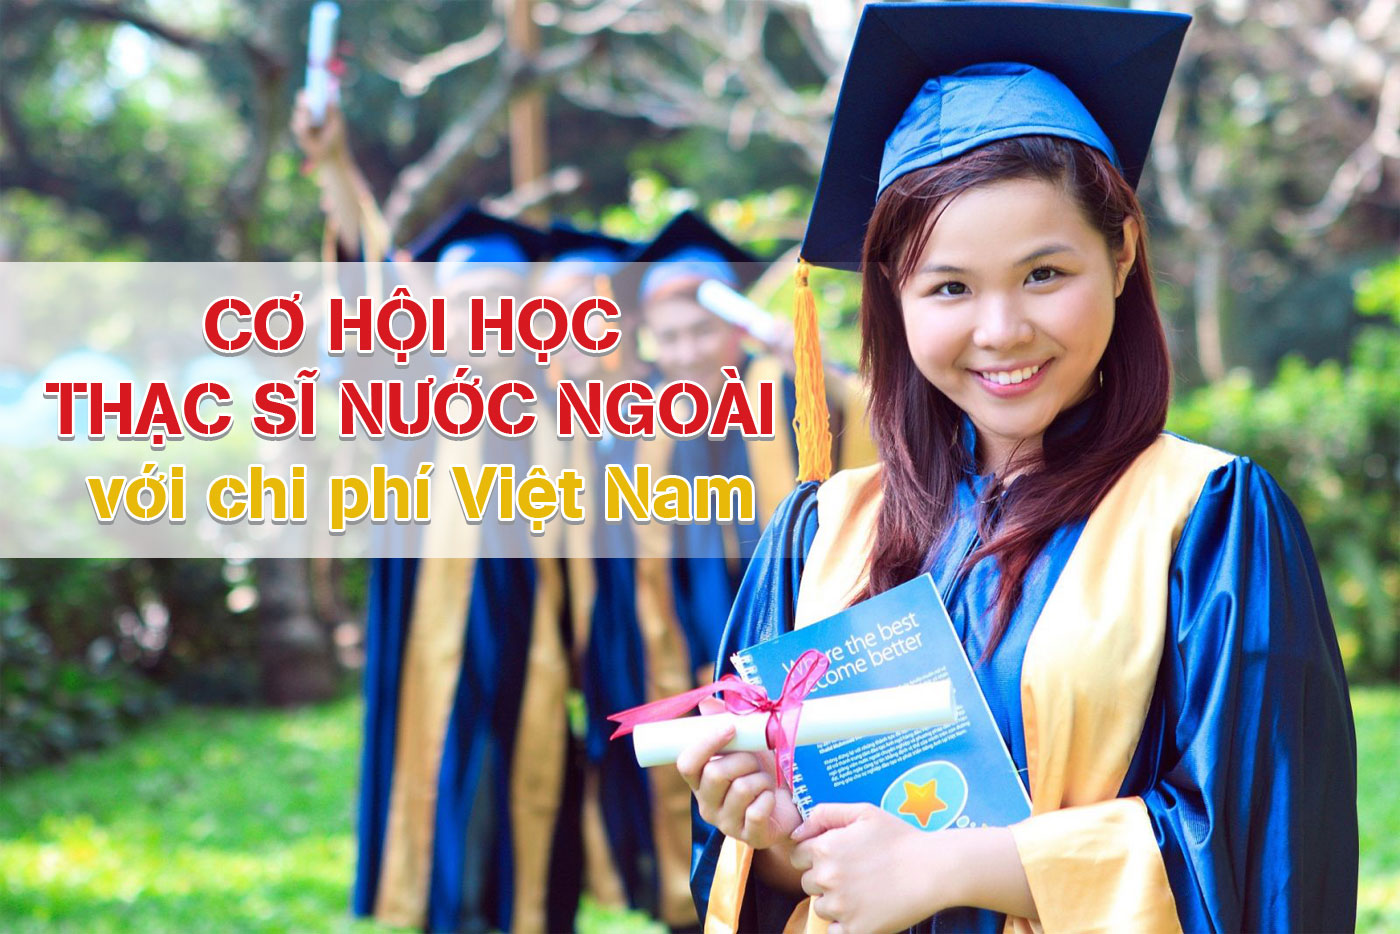 Cơ hội học thạc sĩ nước ngoài với chi phí Việt Nam - Ảnh 1